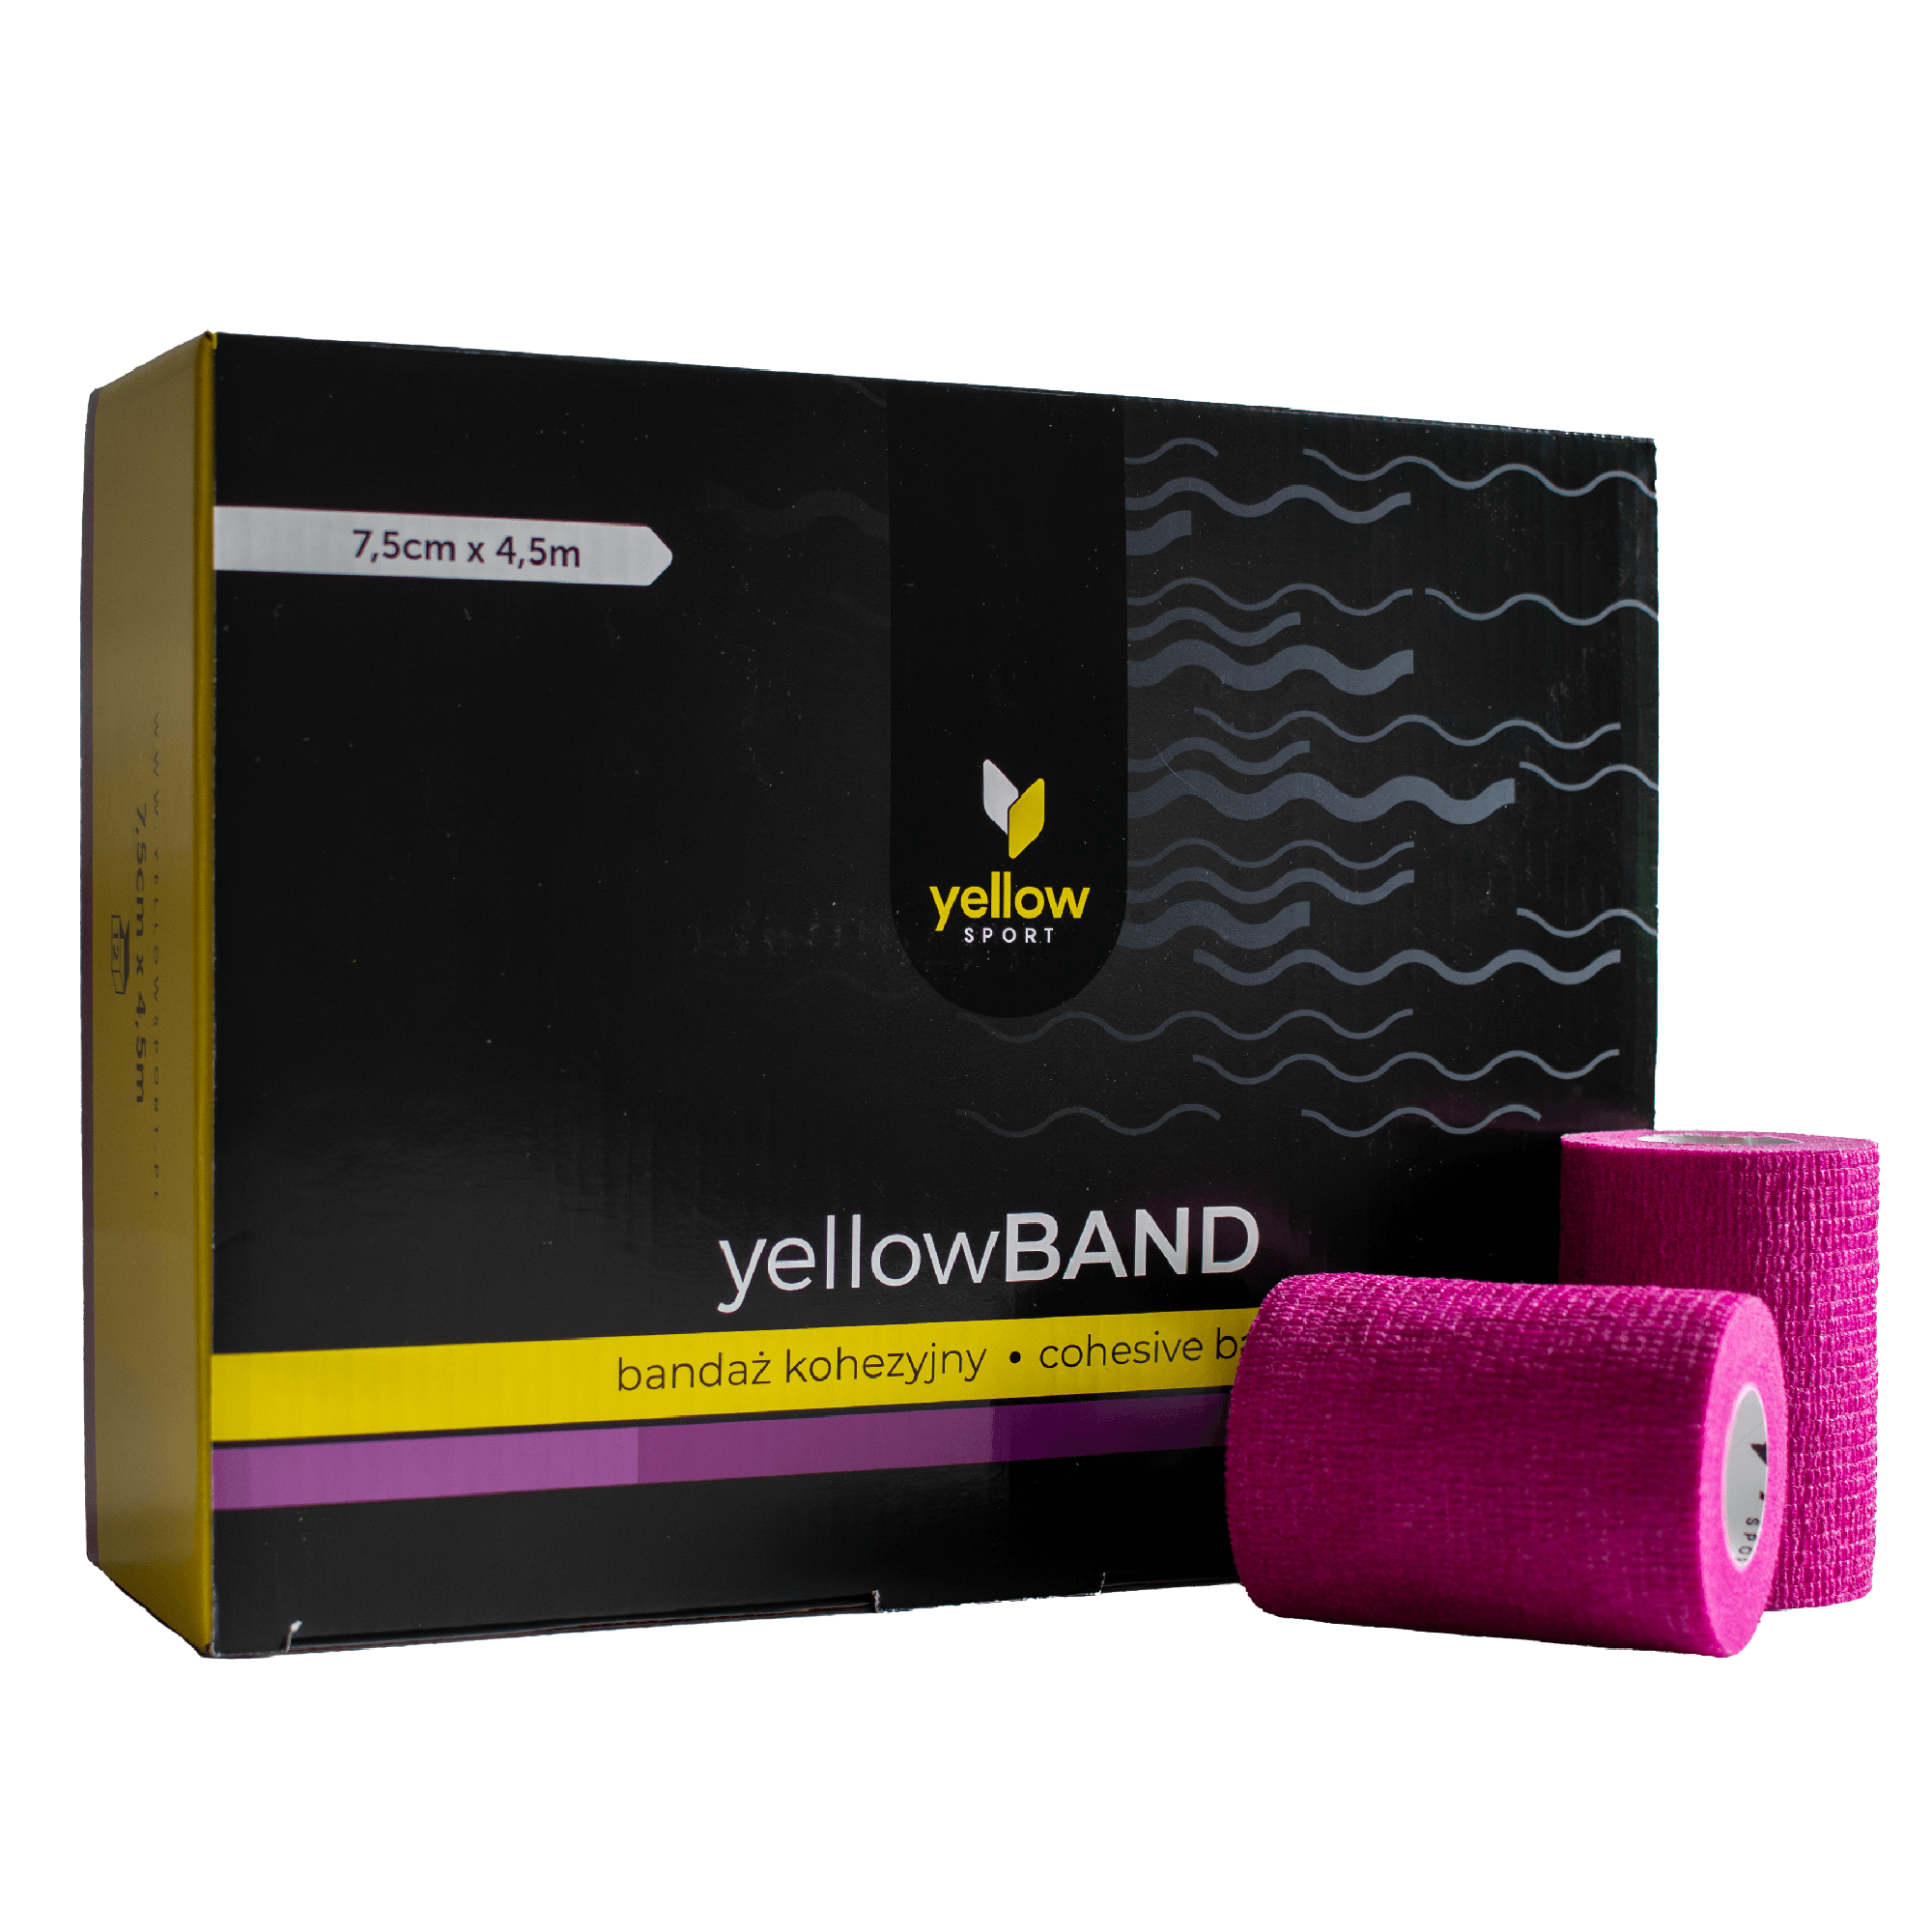 Bandaż kohezyjny yellowBAND - 7,5cm x 4,5m, fioletowy zestaw 12 szt.